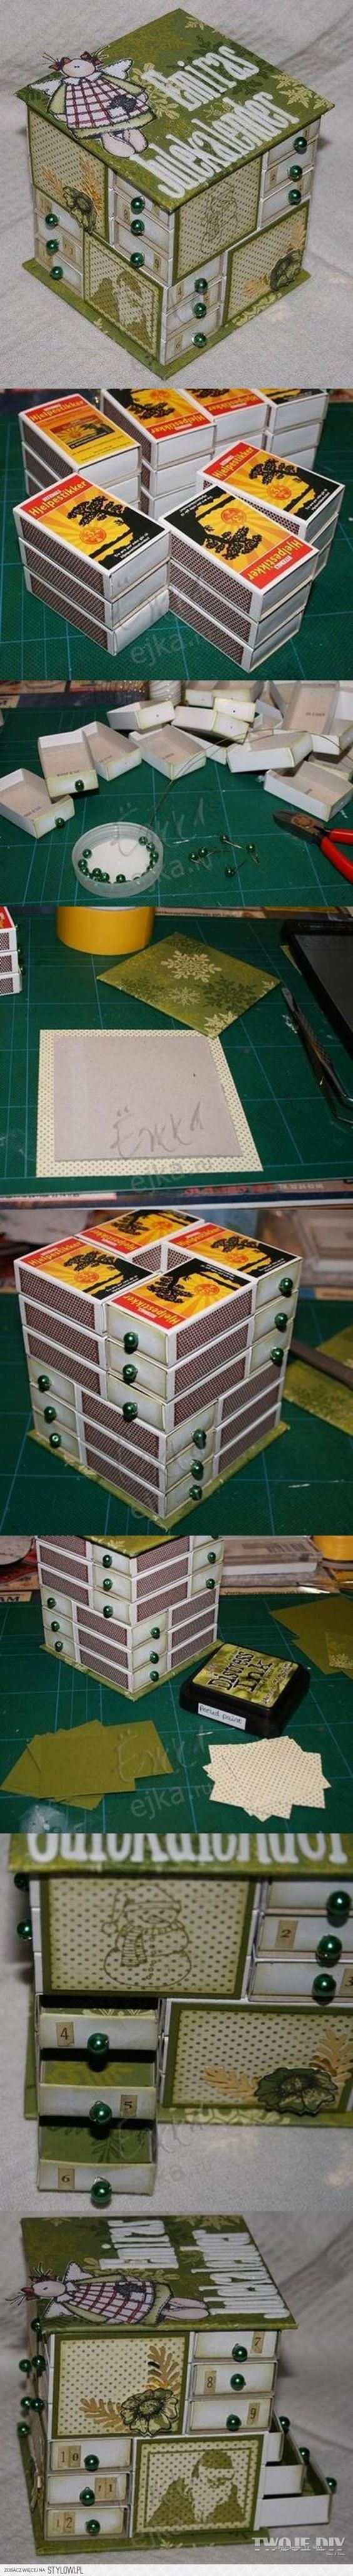 1. Con le scatole dei fiammiferi potete creare una mini cassettiera